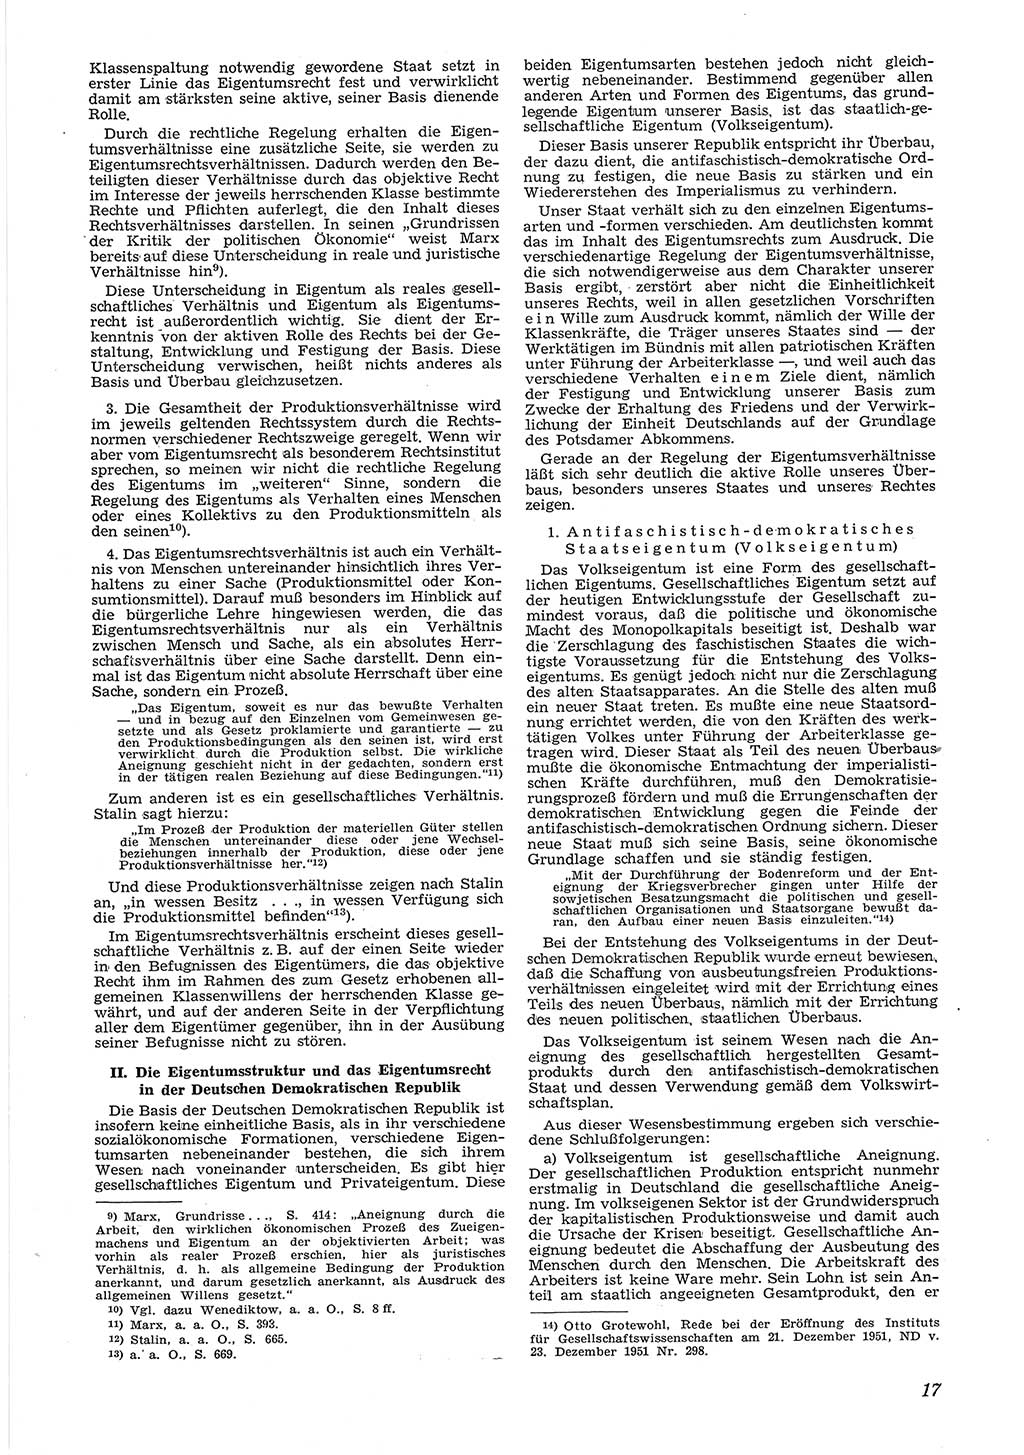 Neue Justiz (NJ), Zeitschrift für Recht und Rechtswissenschaft [Deutsche Demokratische Republik (DDR)], 6. Jahrgang 1952, Seite 17 (NJ DDR 1952, S. 17)